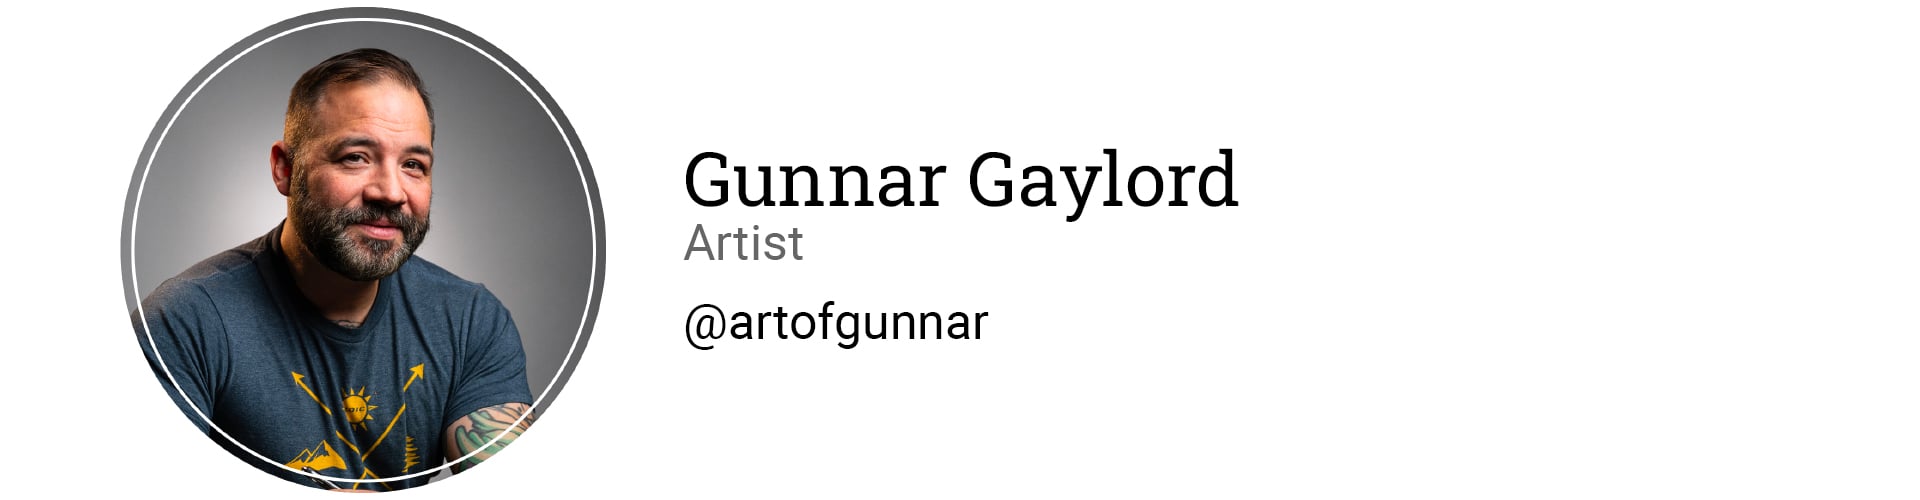 Gunnar-Blog-Signature.jpg